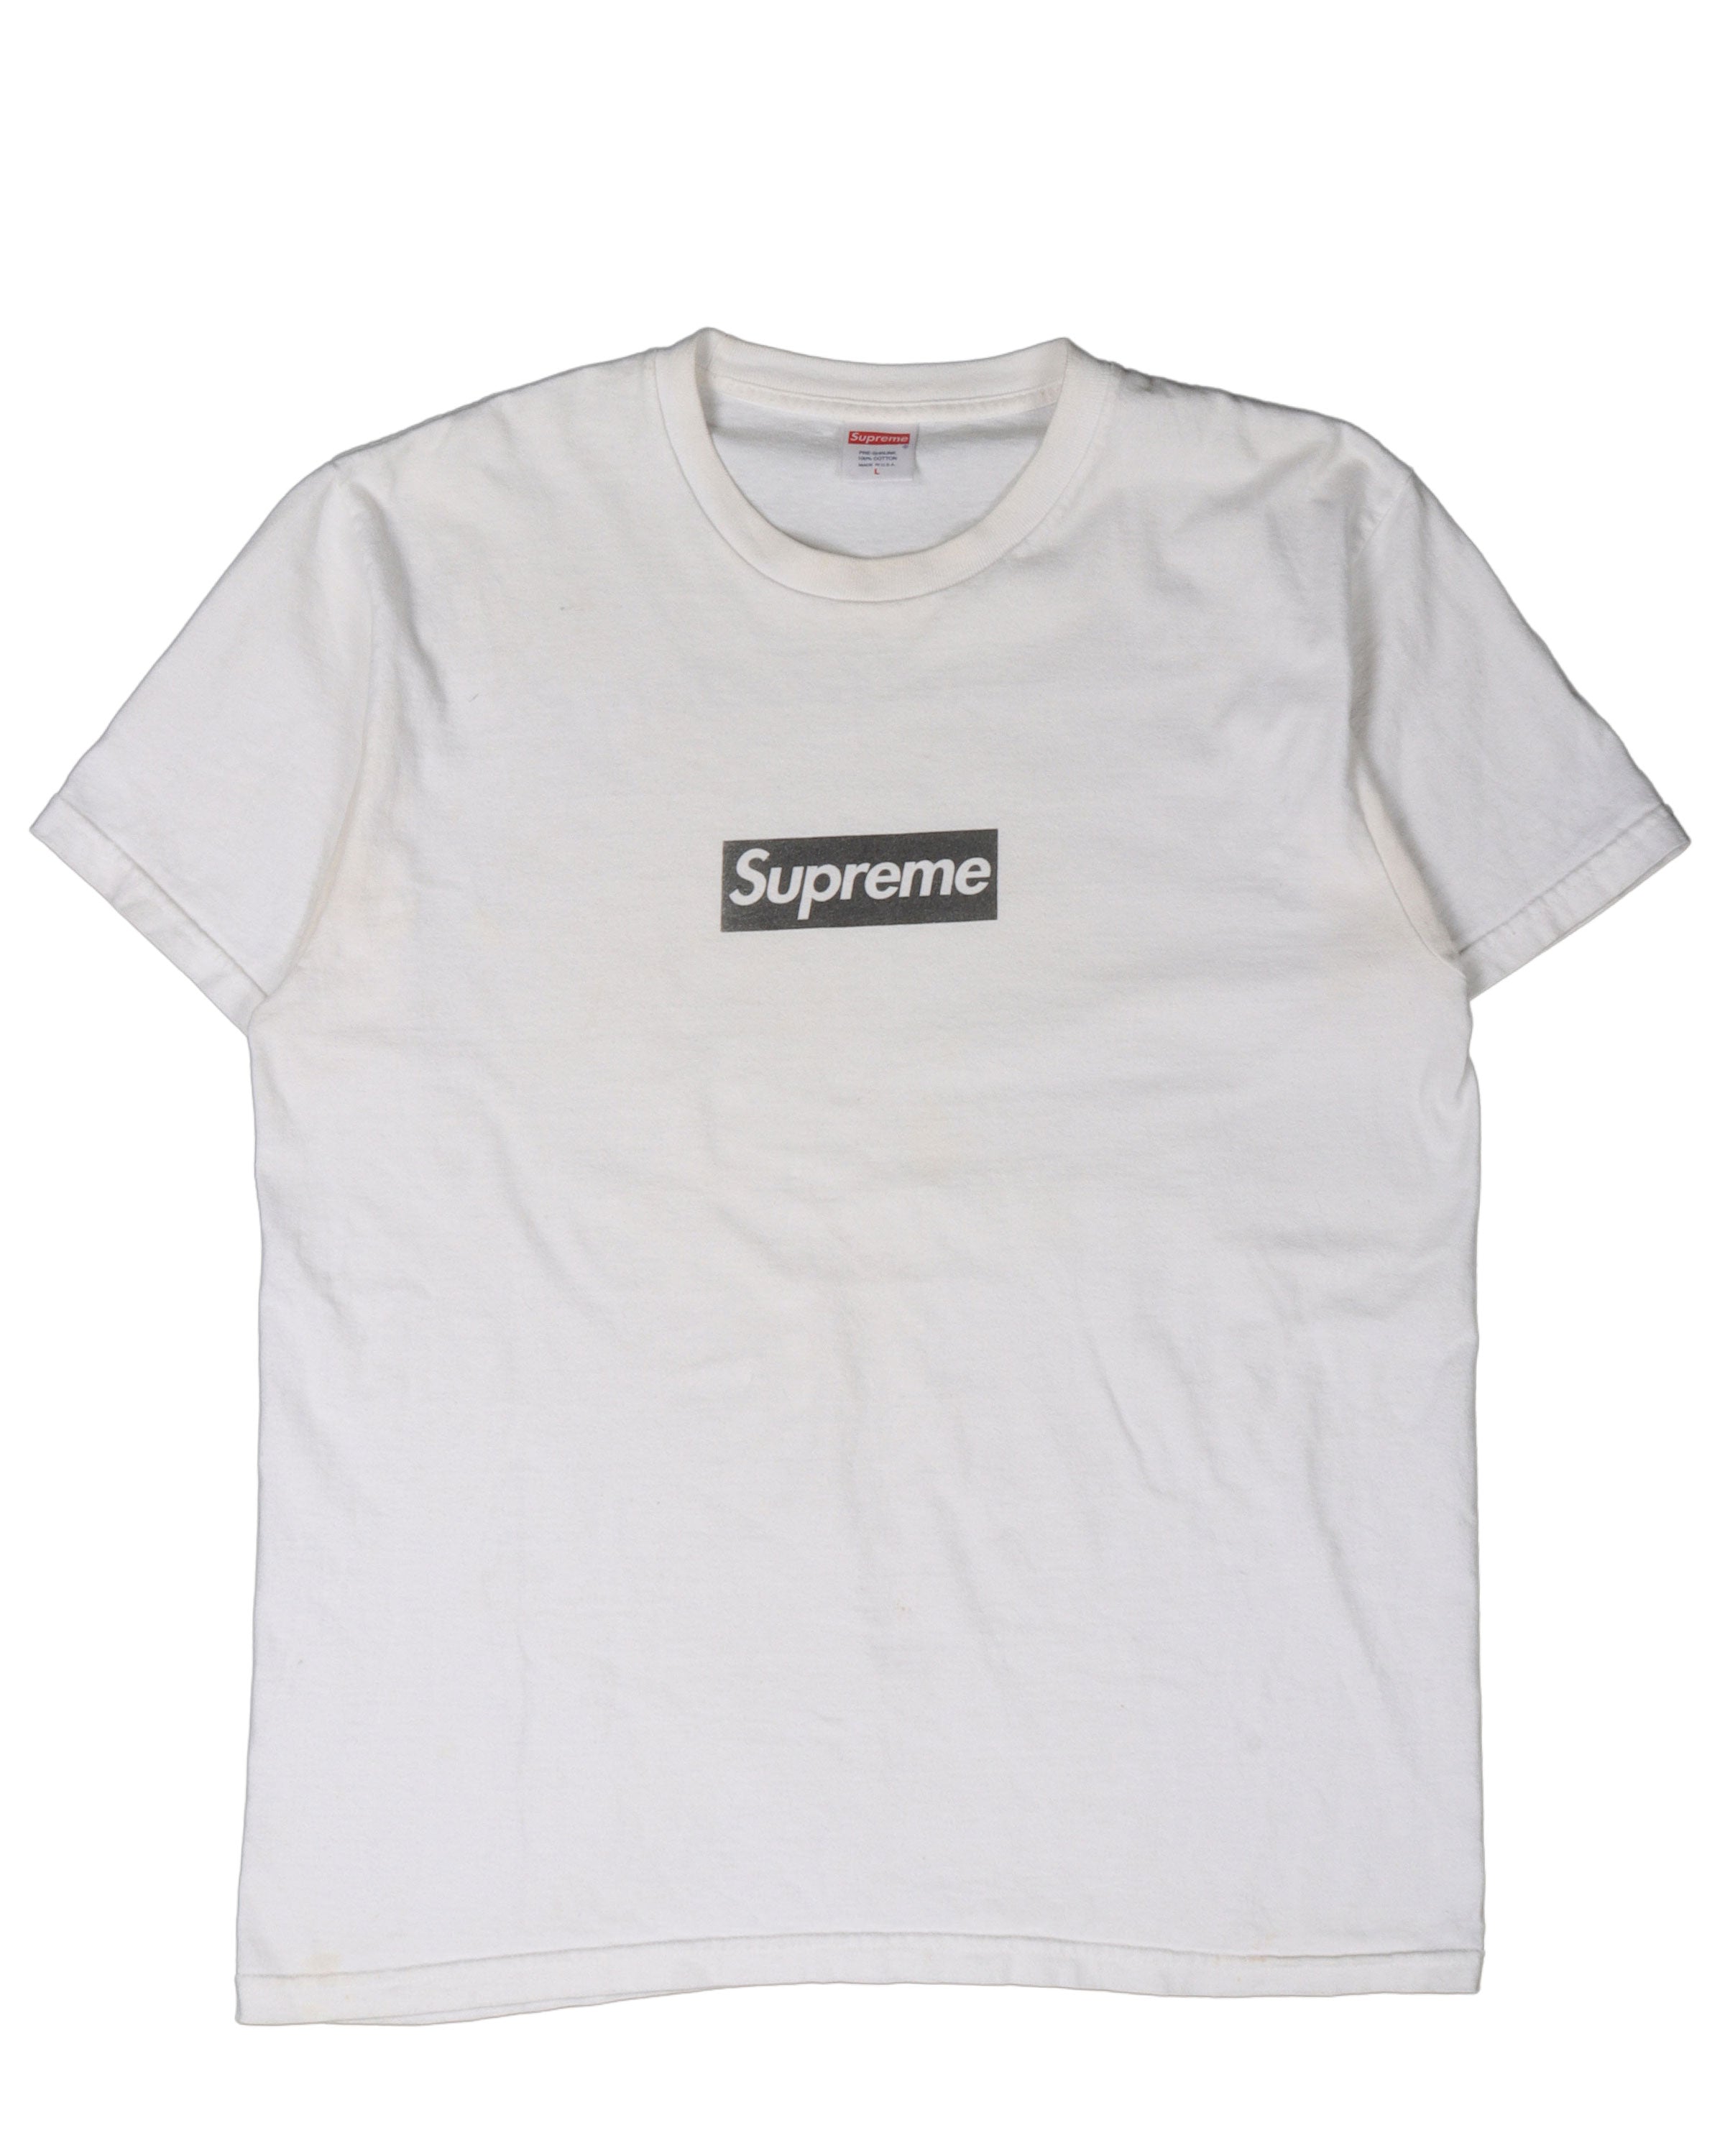 Supreme T-Shirt PARIS BOX LOGO - Size L (1-3498)